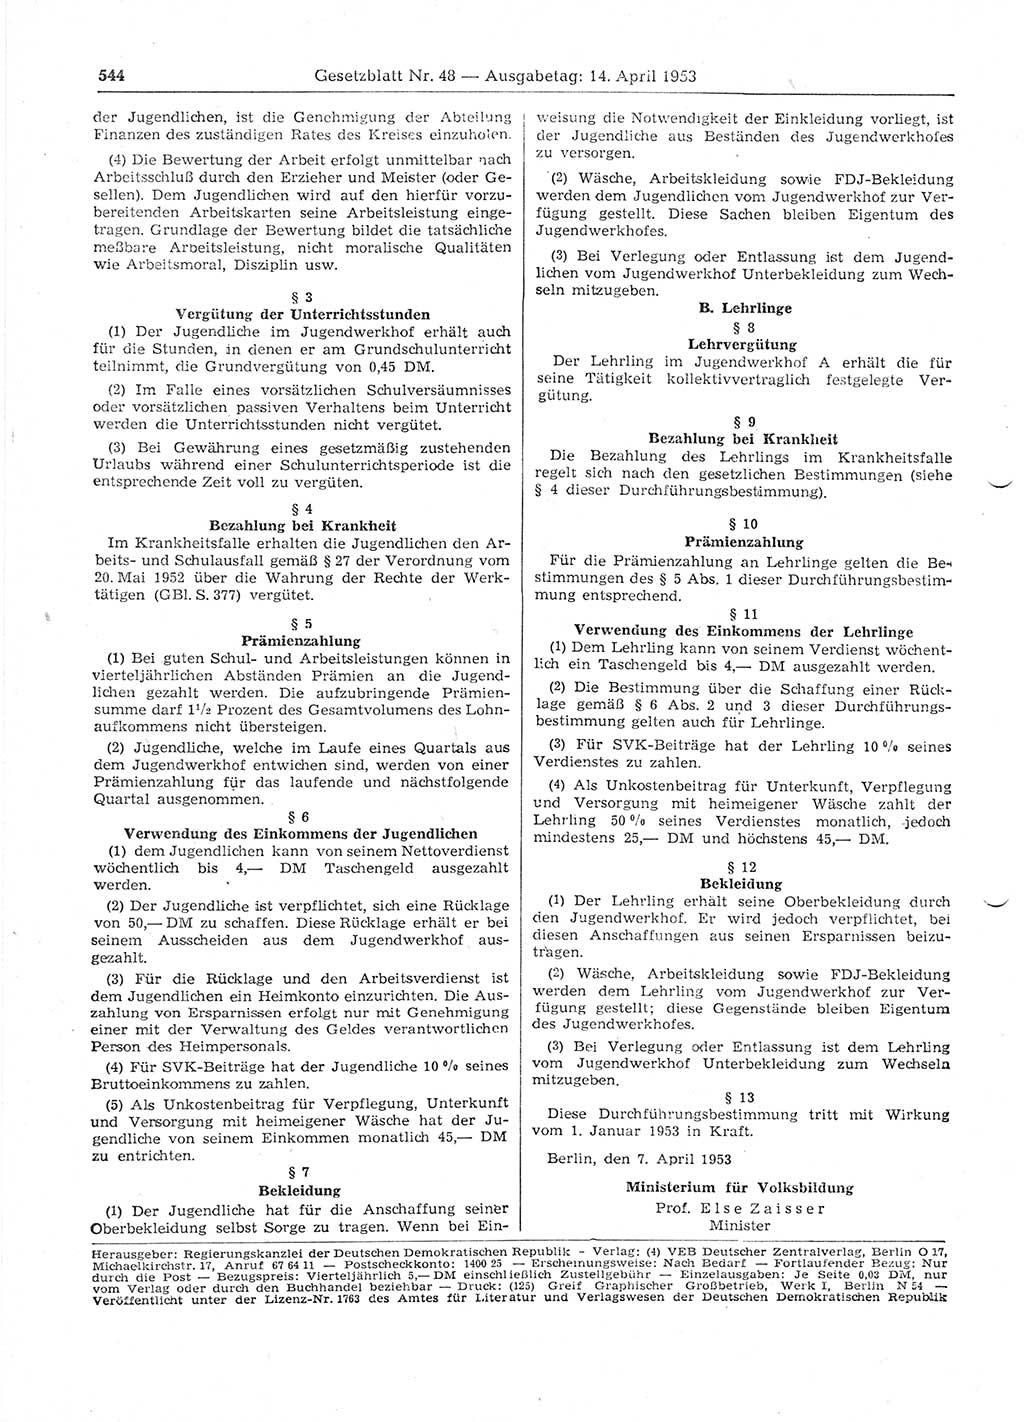 Gesetzblatt (GBl.) der Deutschen Demokratischen Republik (DDR) 1953, Seite 544 (GBl. DDR 1953, S. 544)